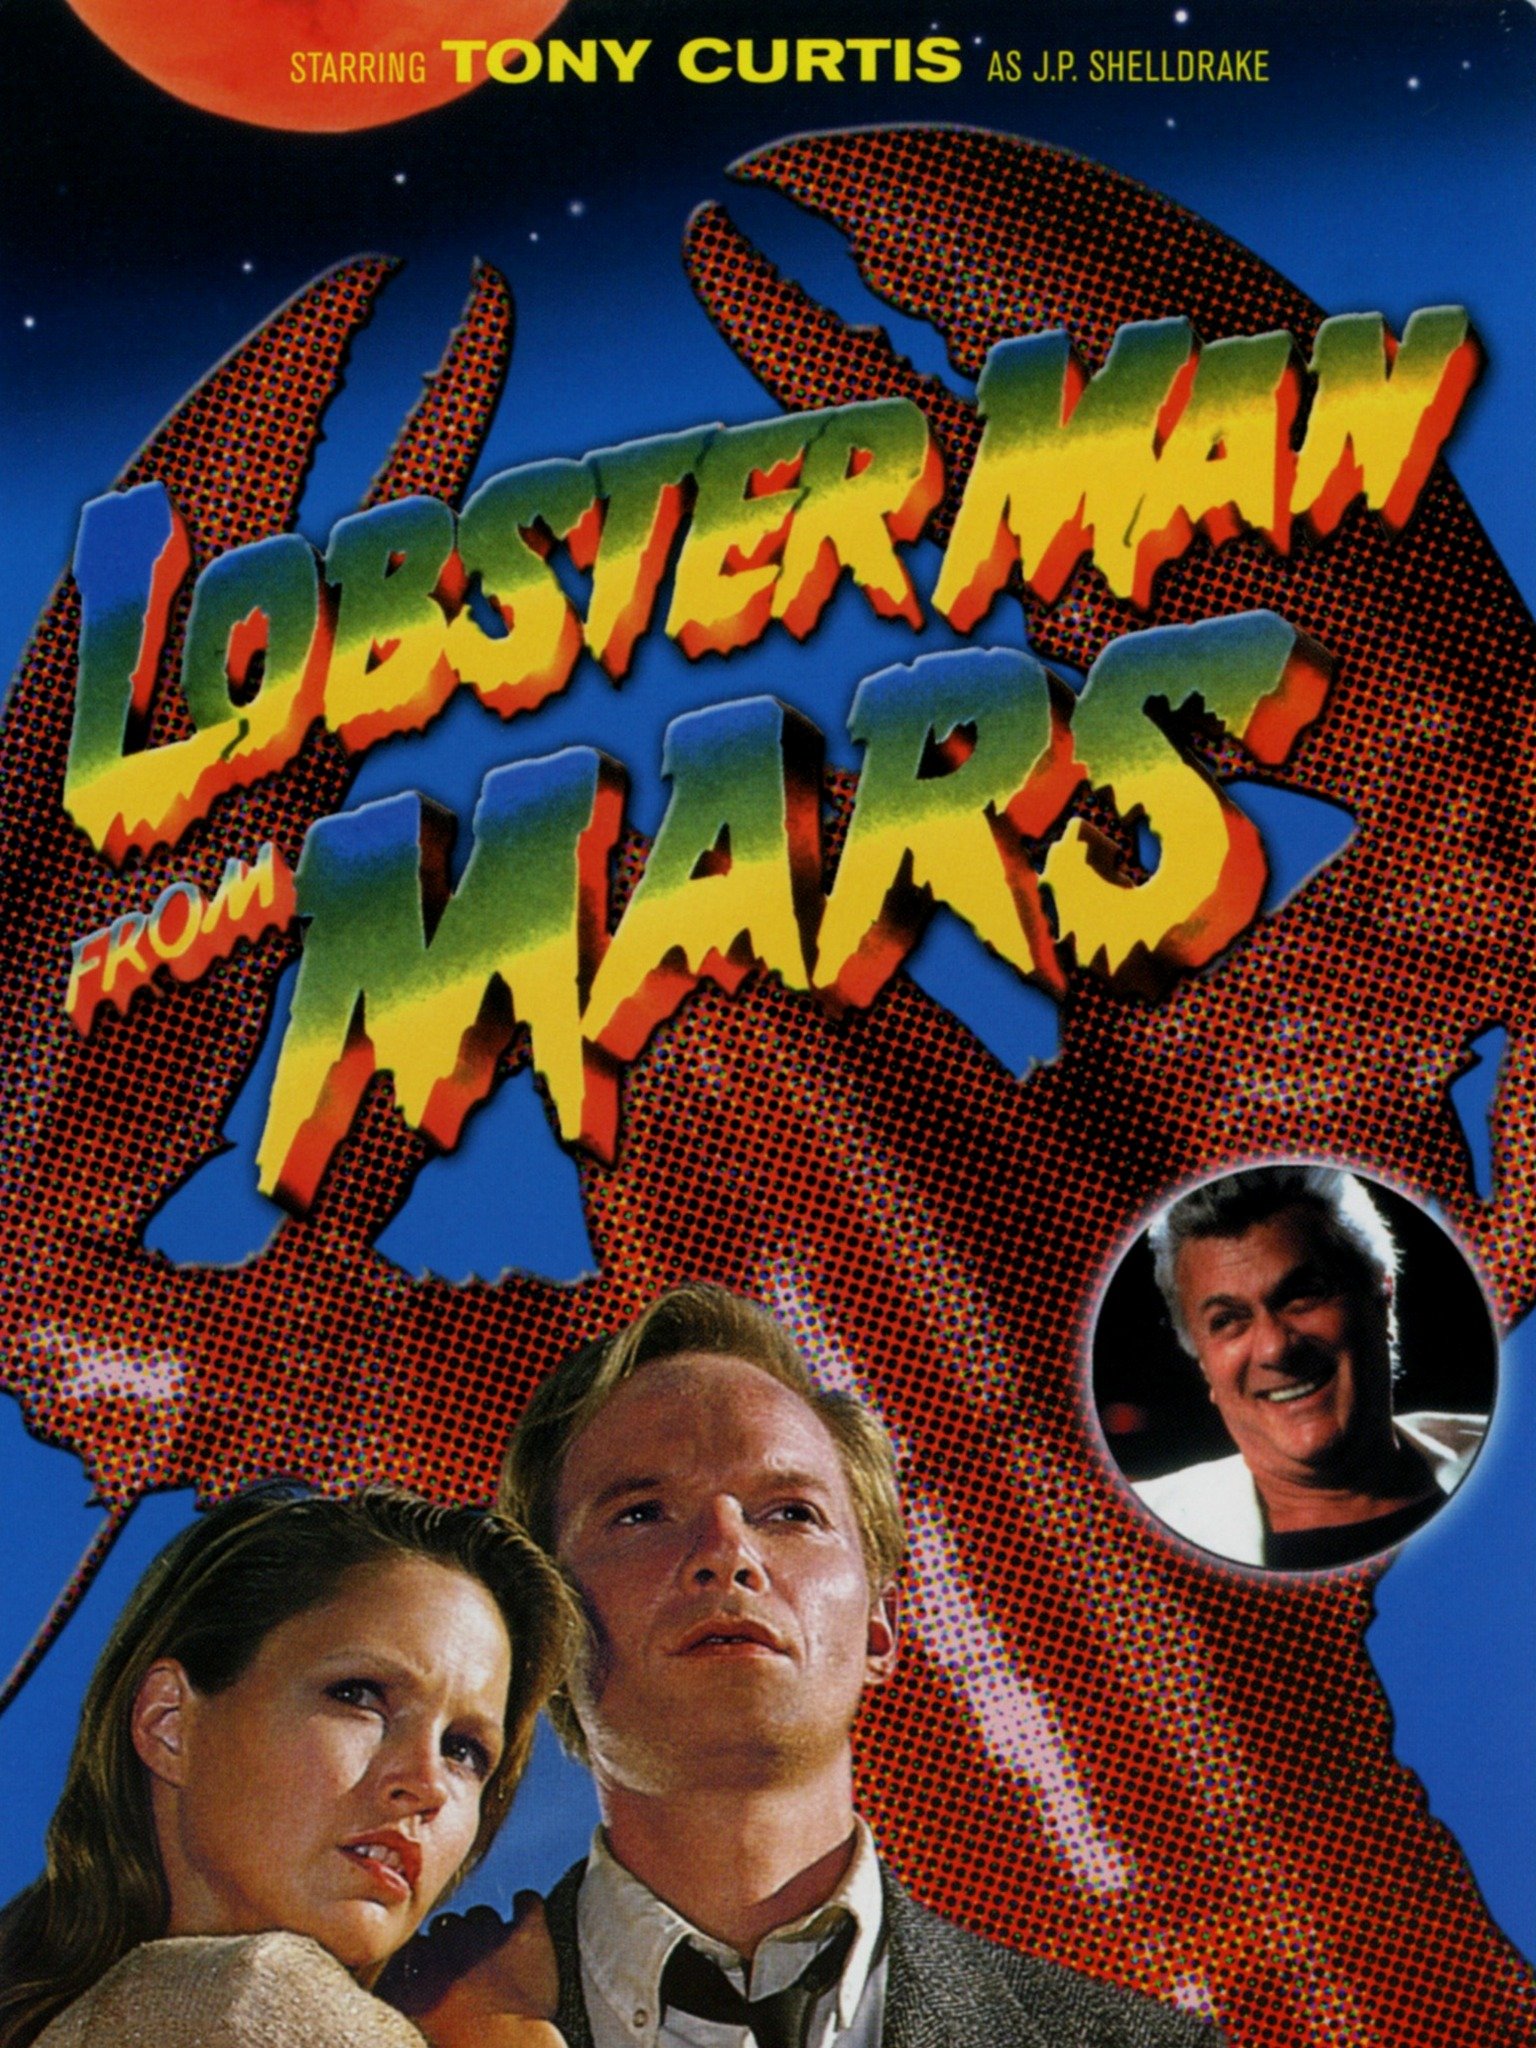 Lobster Man From Mars 1989